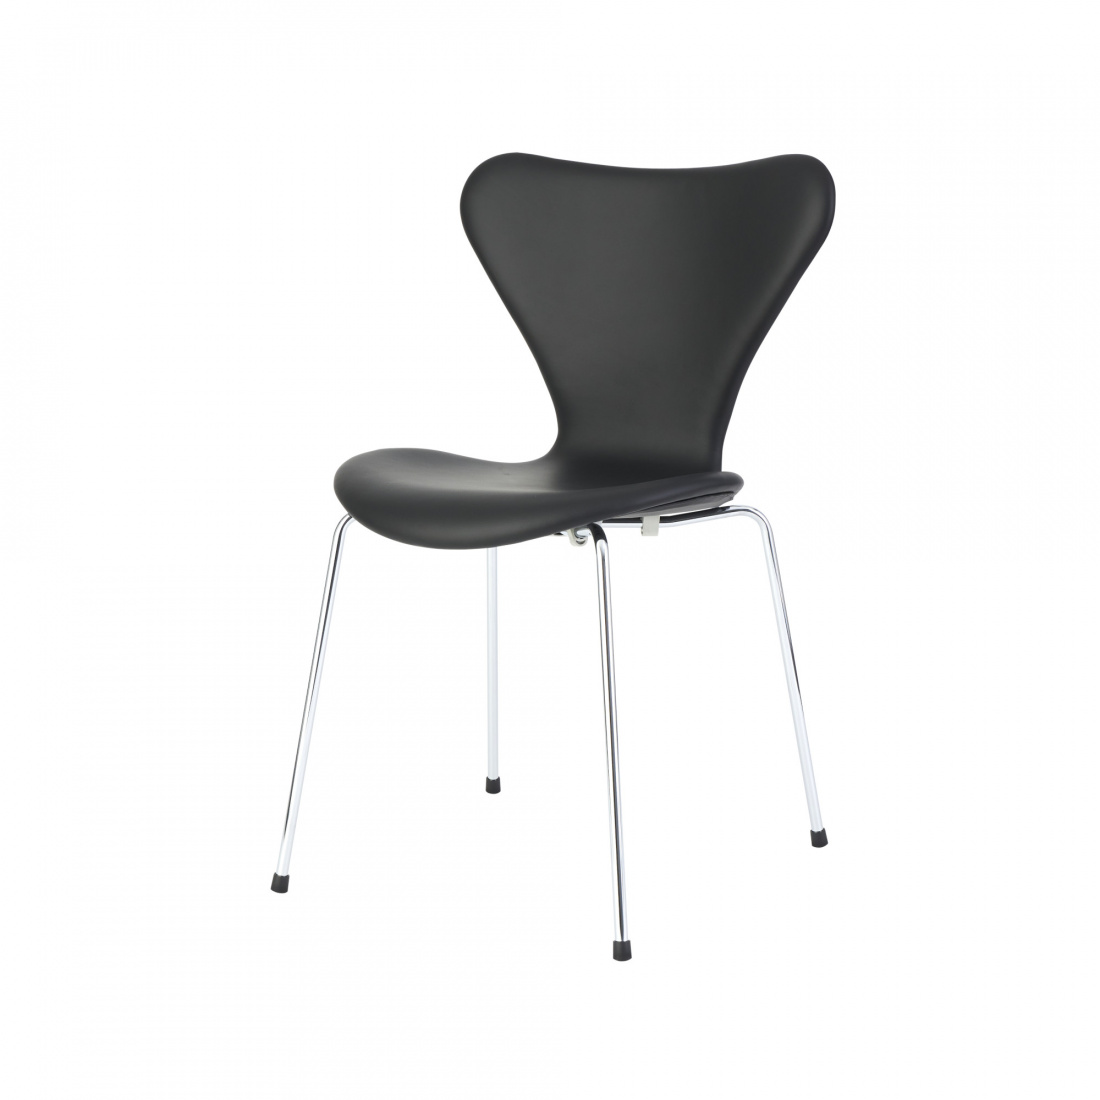 7 er stol - læder "elegance" - Arne Jacobsen UpNordic